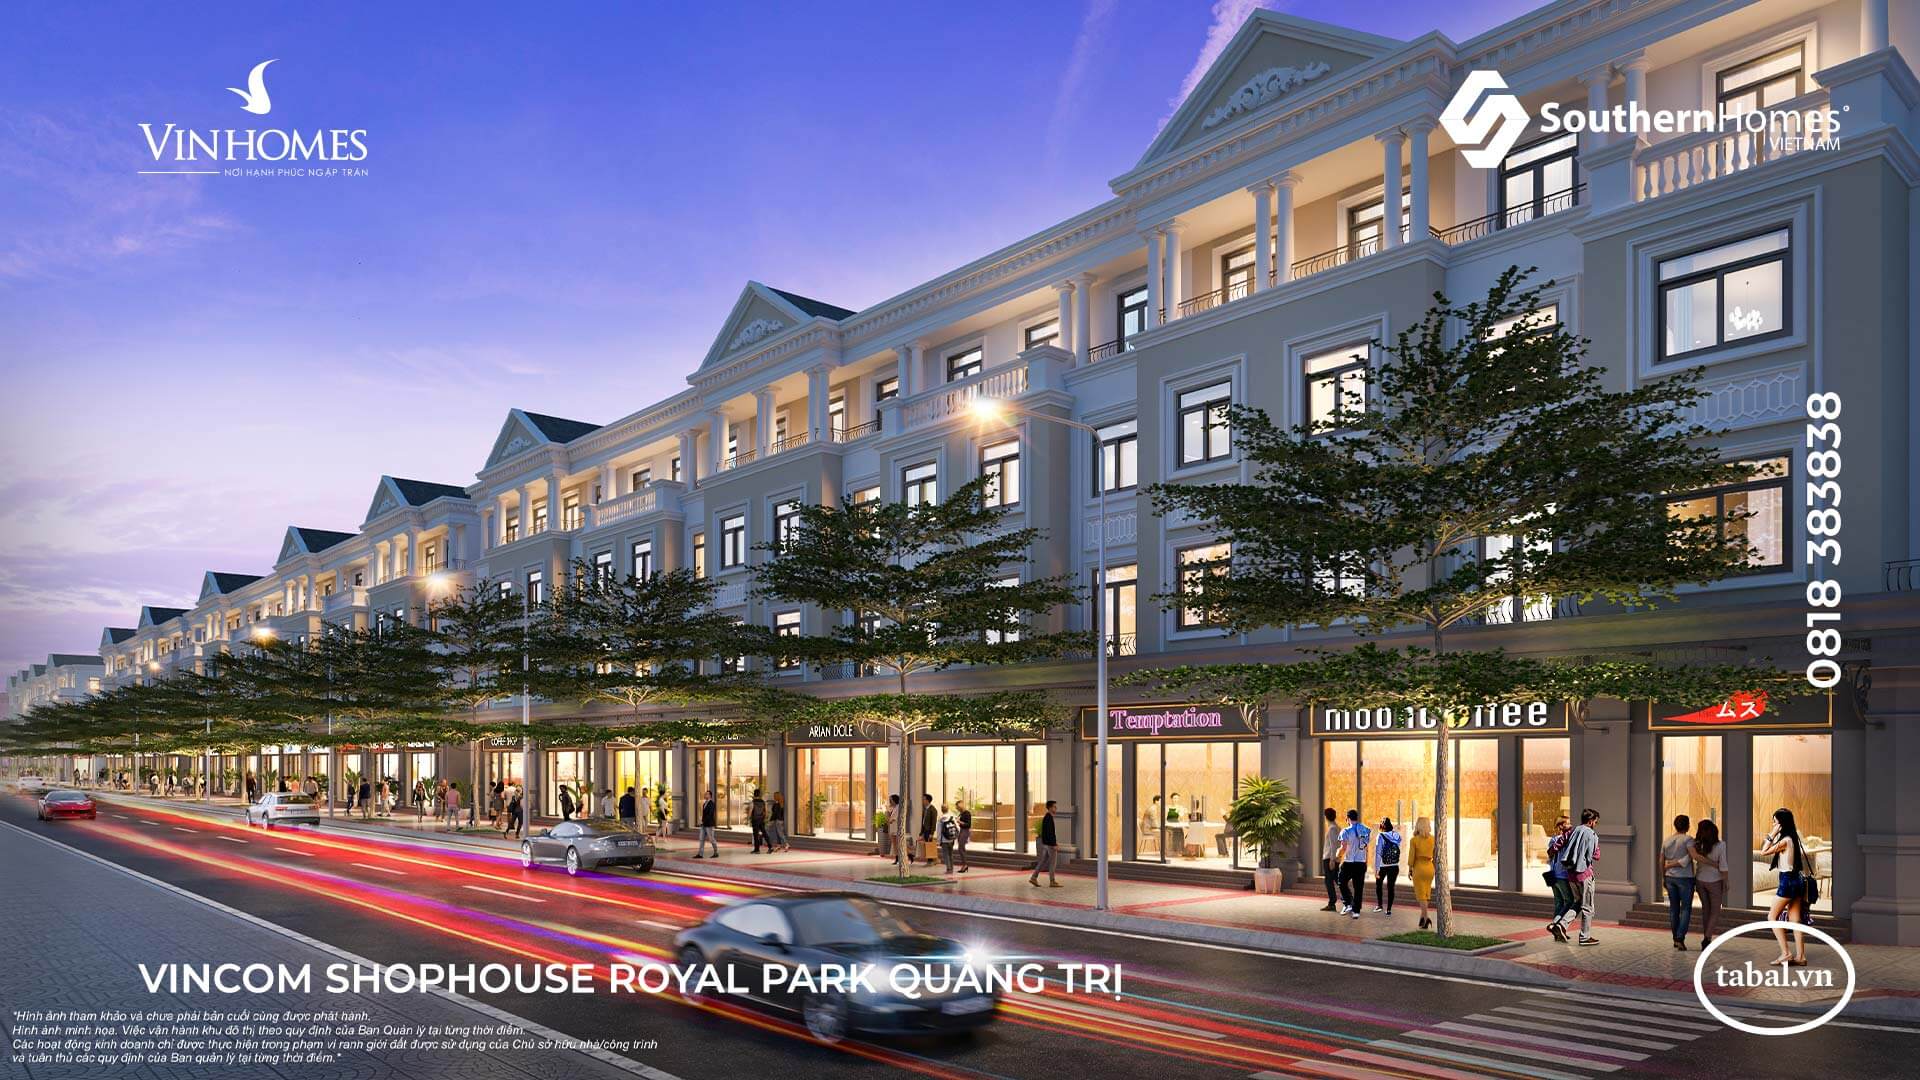 Vincom Shophouse Royal Park - Tổ hợp TTTM, nhà phố thương mại liền kề là dự án có tầm cỡ và quy mô đầu tiên tại Quảng Trị.